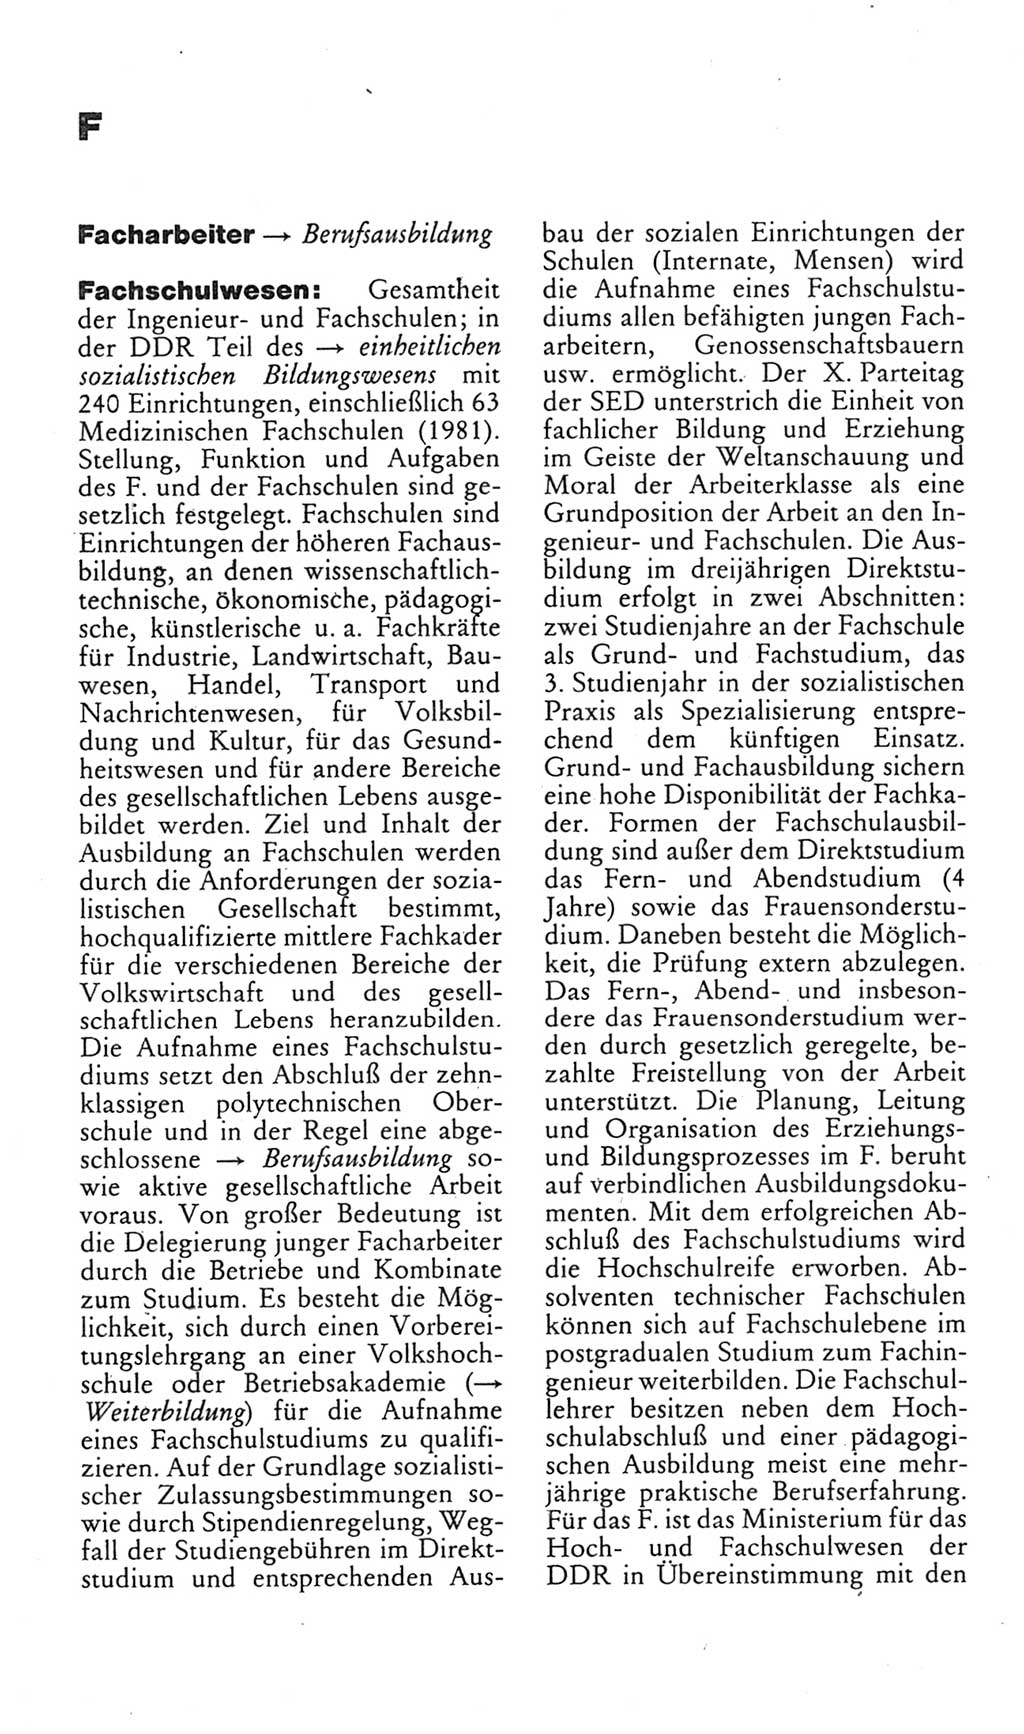 Kleines politisches Wörterbuch [Deutsche Demokratische Republik (DDR)] 1985, Seite 254 (Kl. pol. Wb. DDR 1985, S. 254)